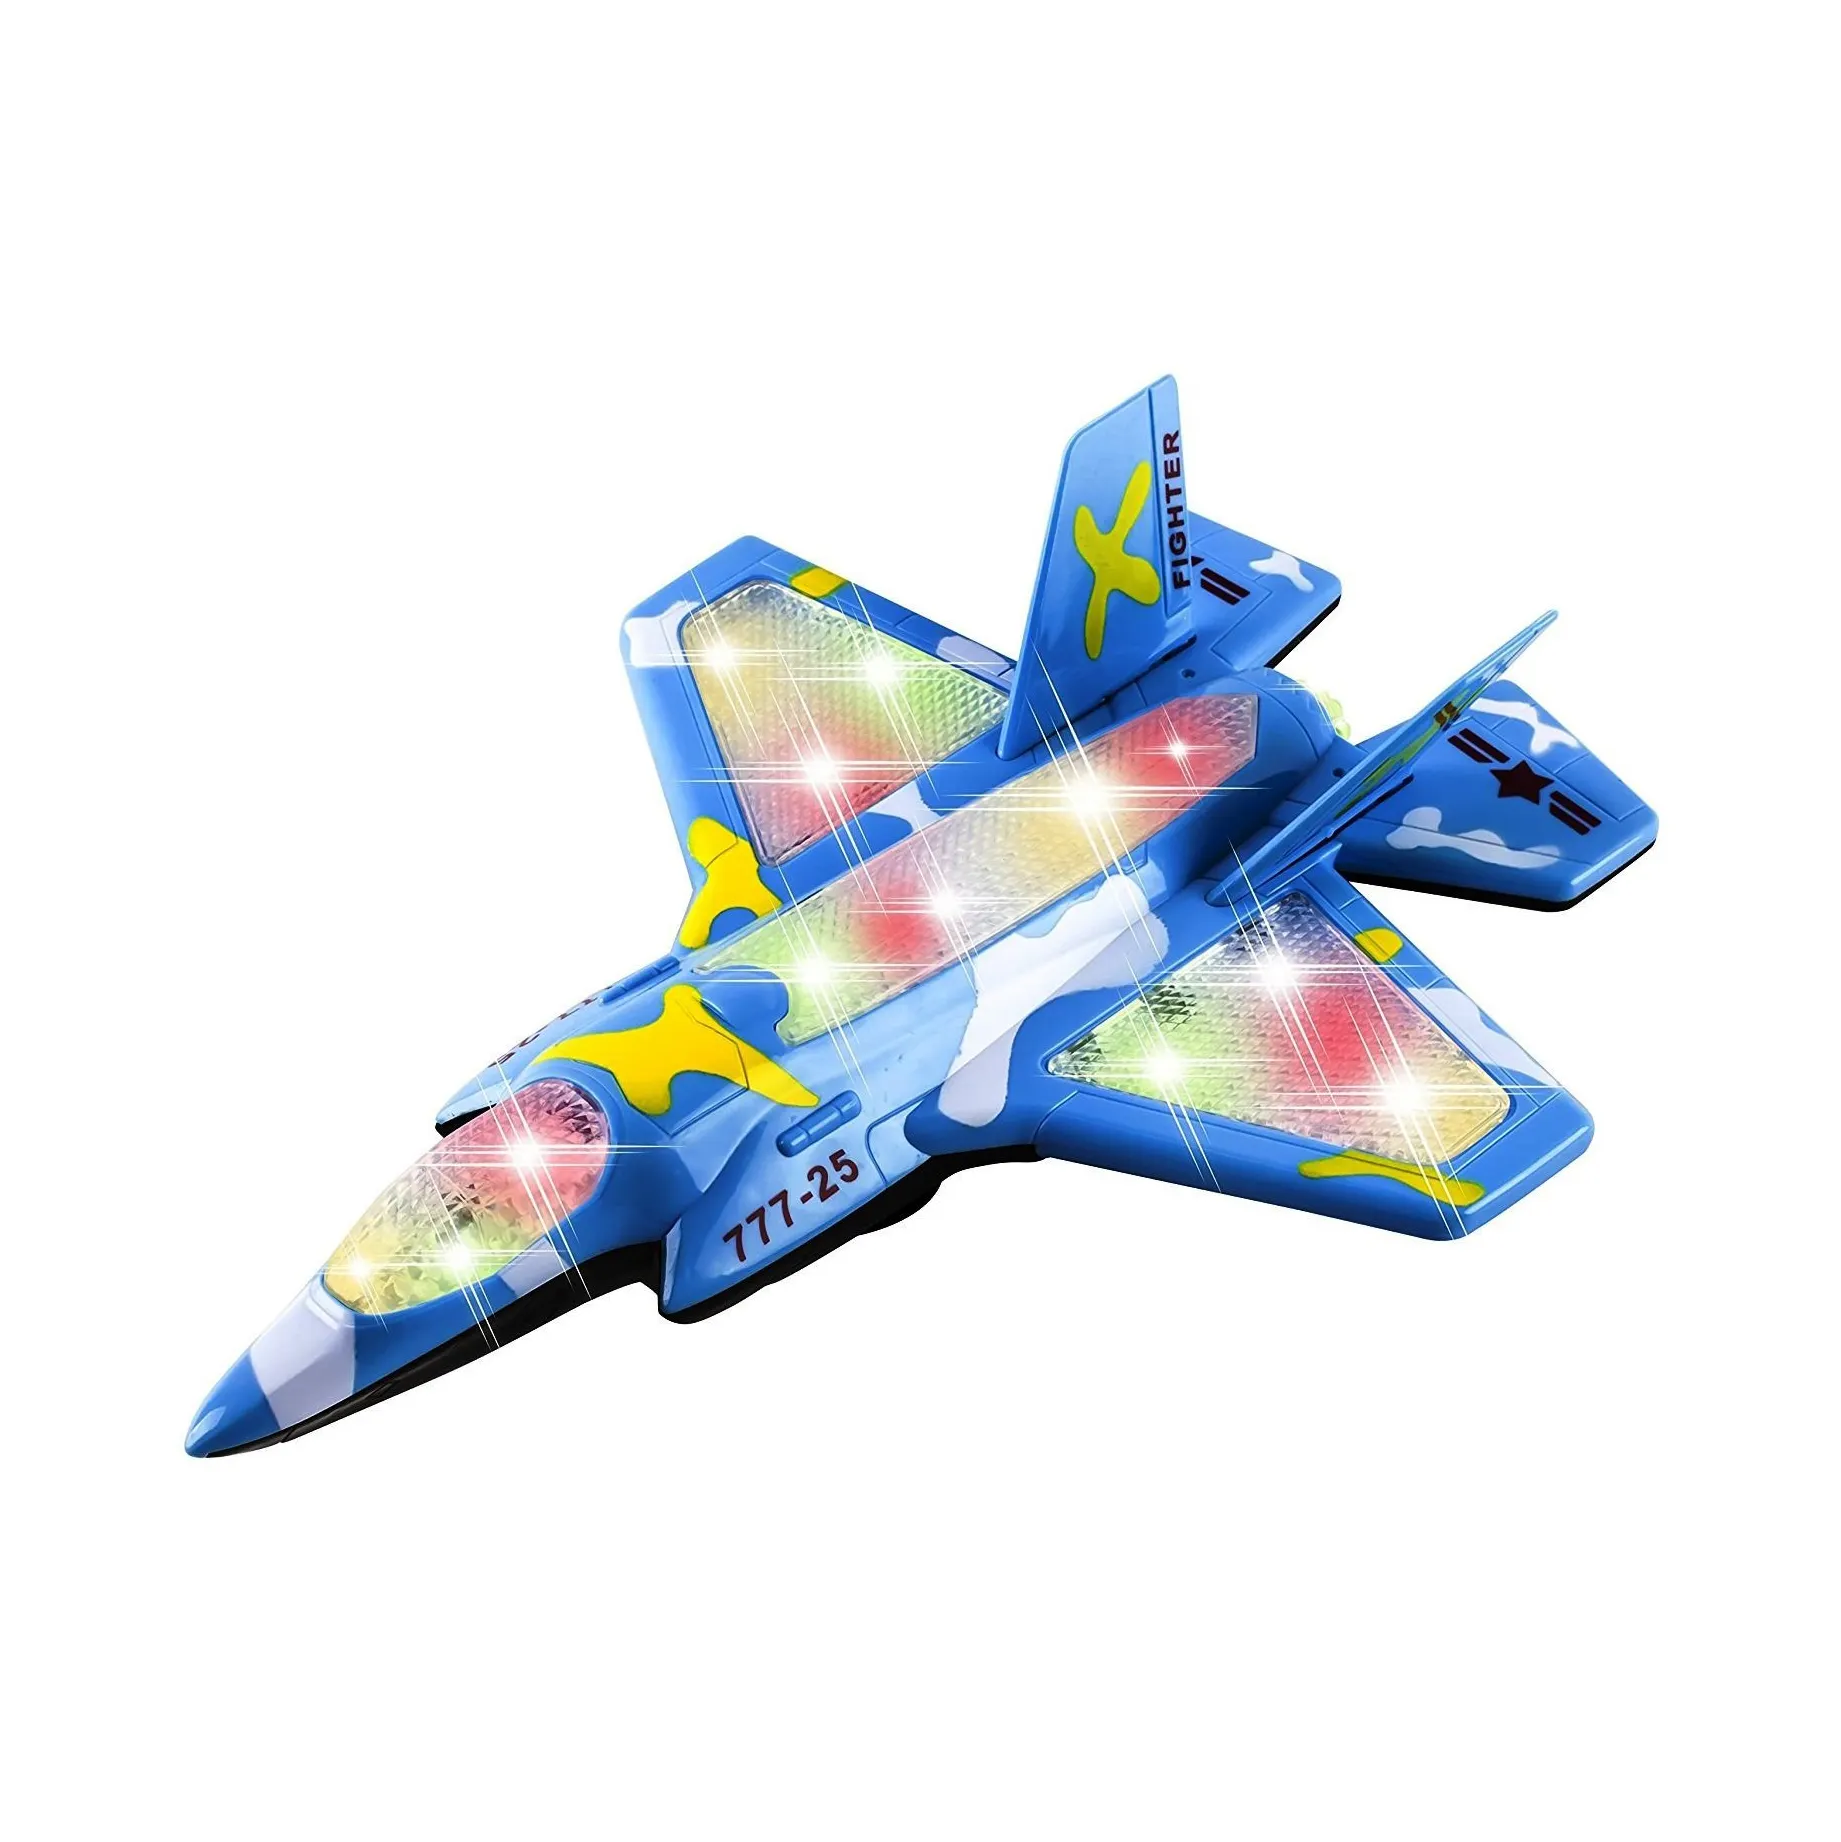 सैन्य लड़ाकू एयरफोर्स हवाई जहाज खिलौना चमकती रोशनी और जोर सेना के साथ बच्चों के लिए लगता है, टक्कर और जाओ कार्रवाई के साथ